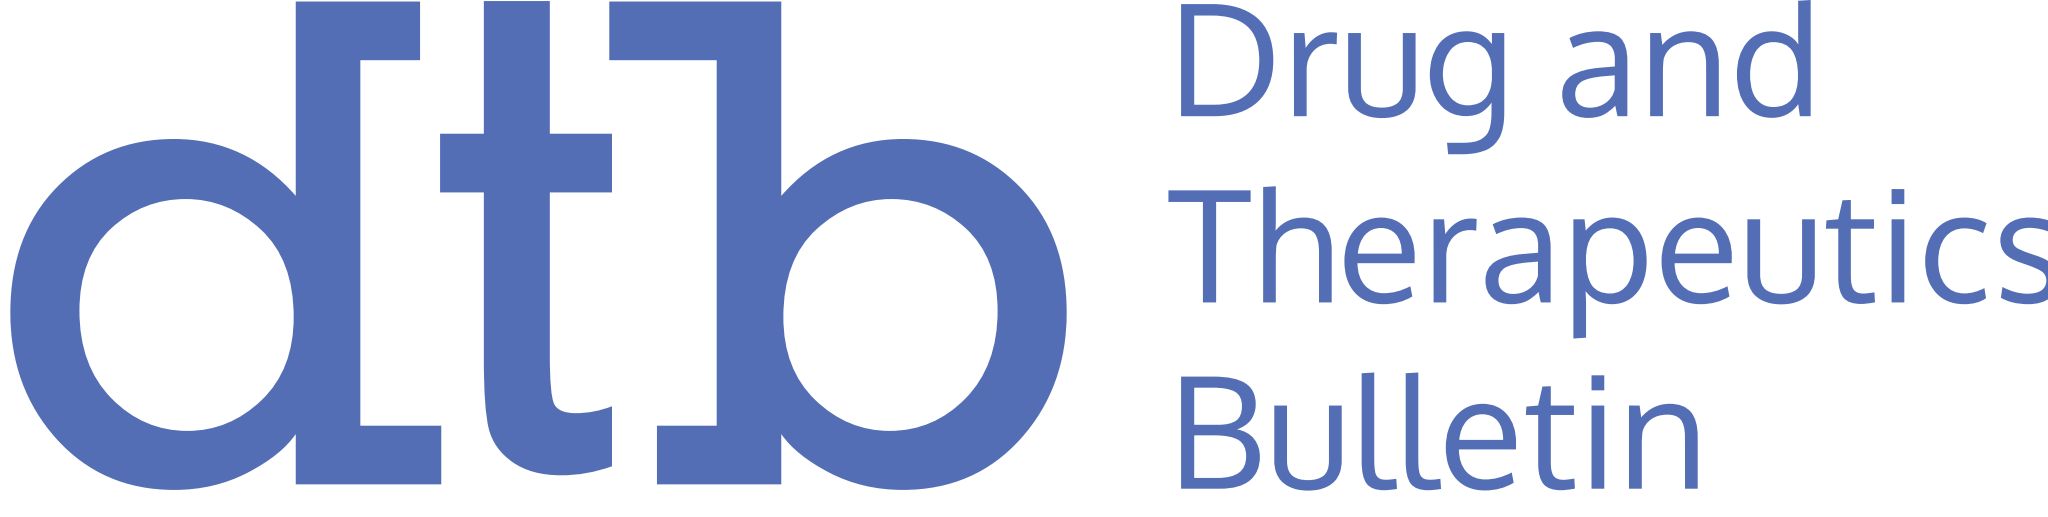 Dtb Logo Colour 200Pxwide (1) (1)